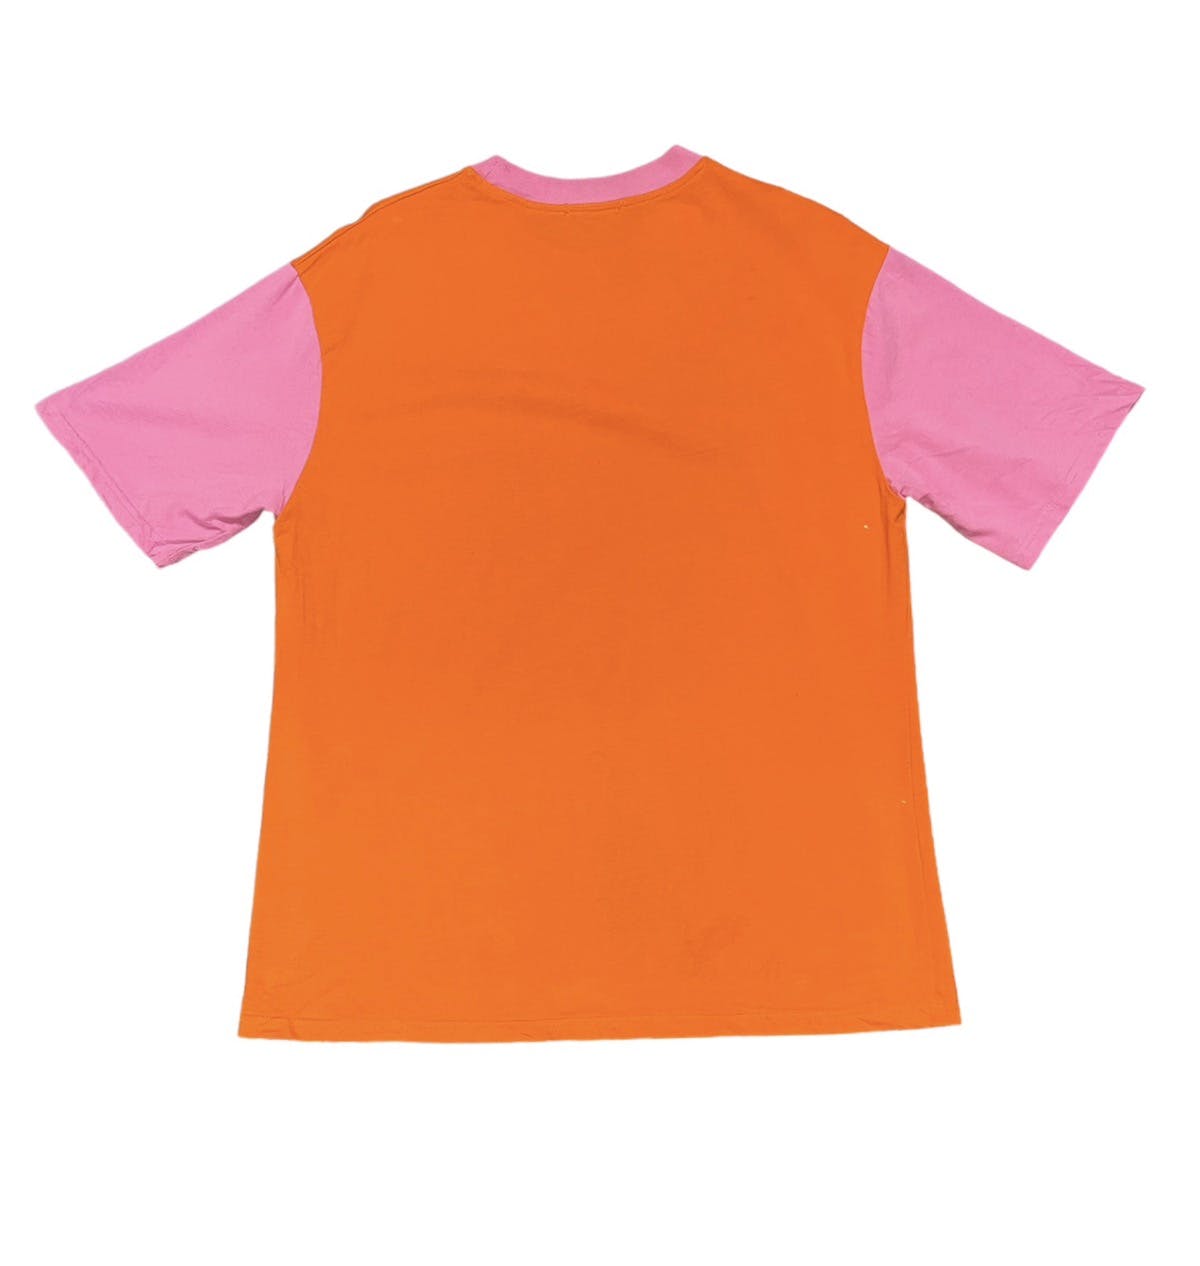 Marni Tshirt spellout - 2